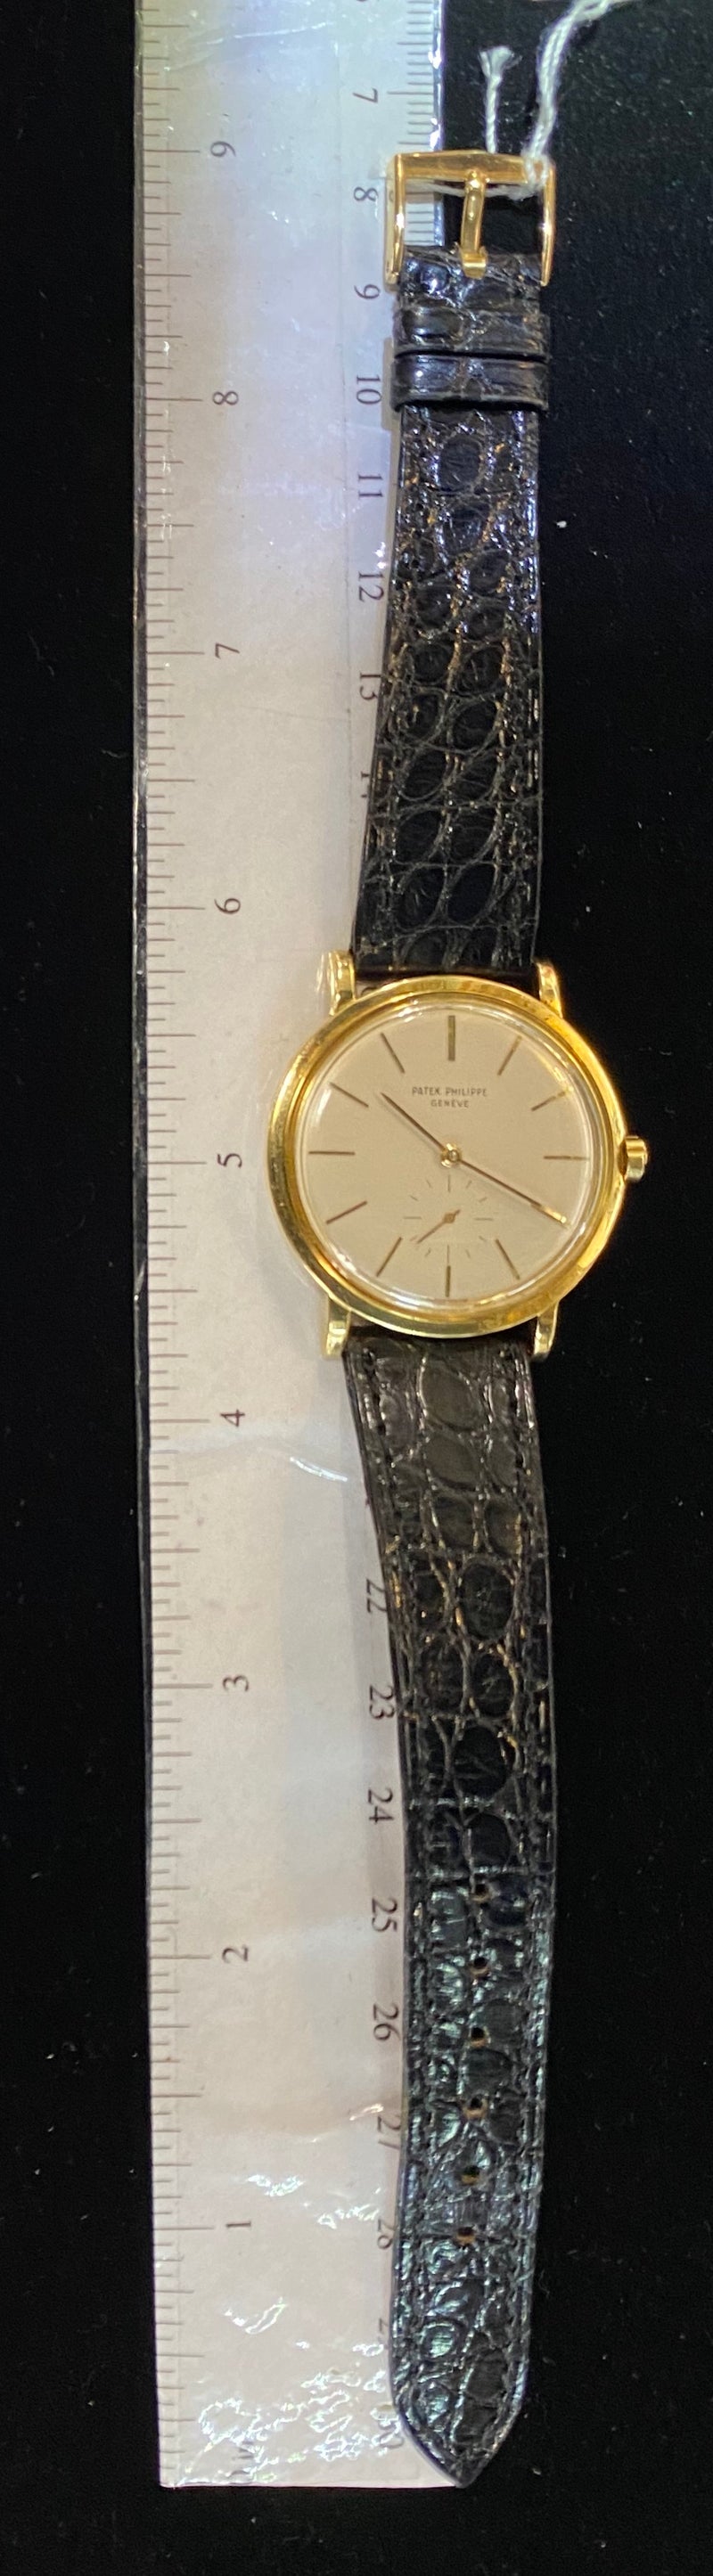 PATEK PHILIPPE 18K YG 1960's Men’s Automatic Watch Ref. #3429 -$50K Apr w/CoA! ^